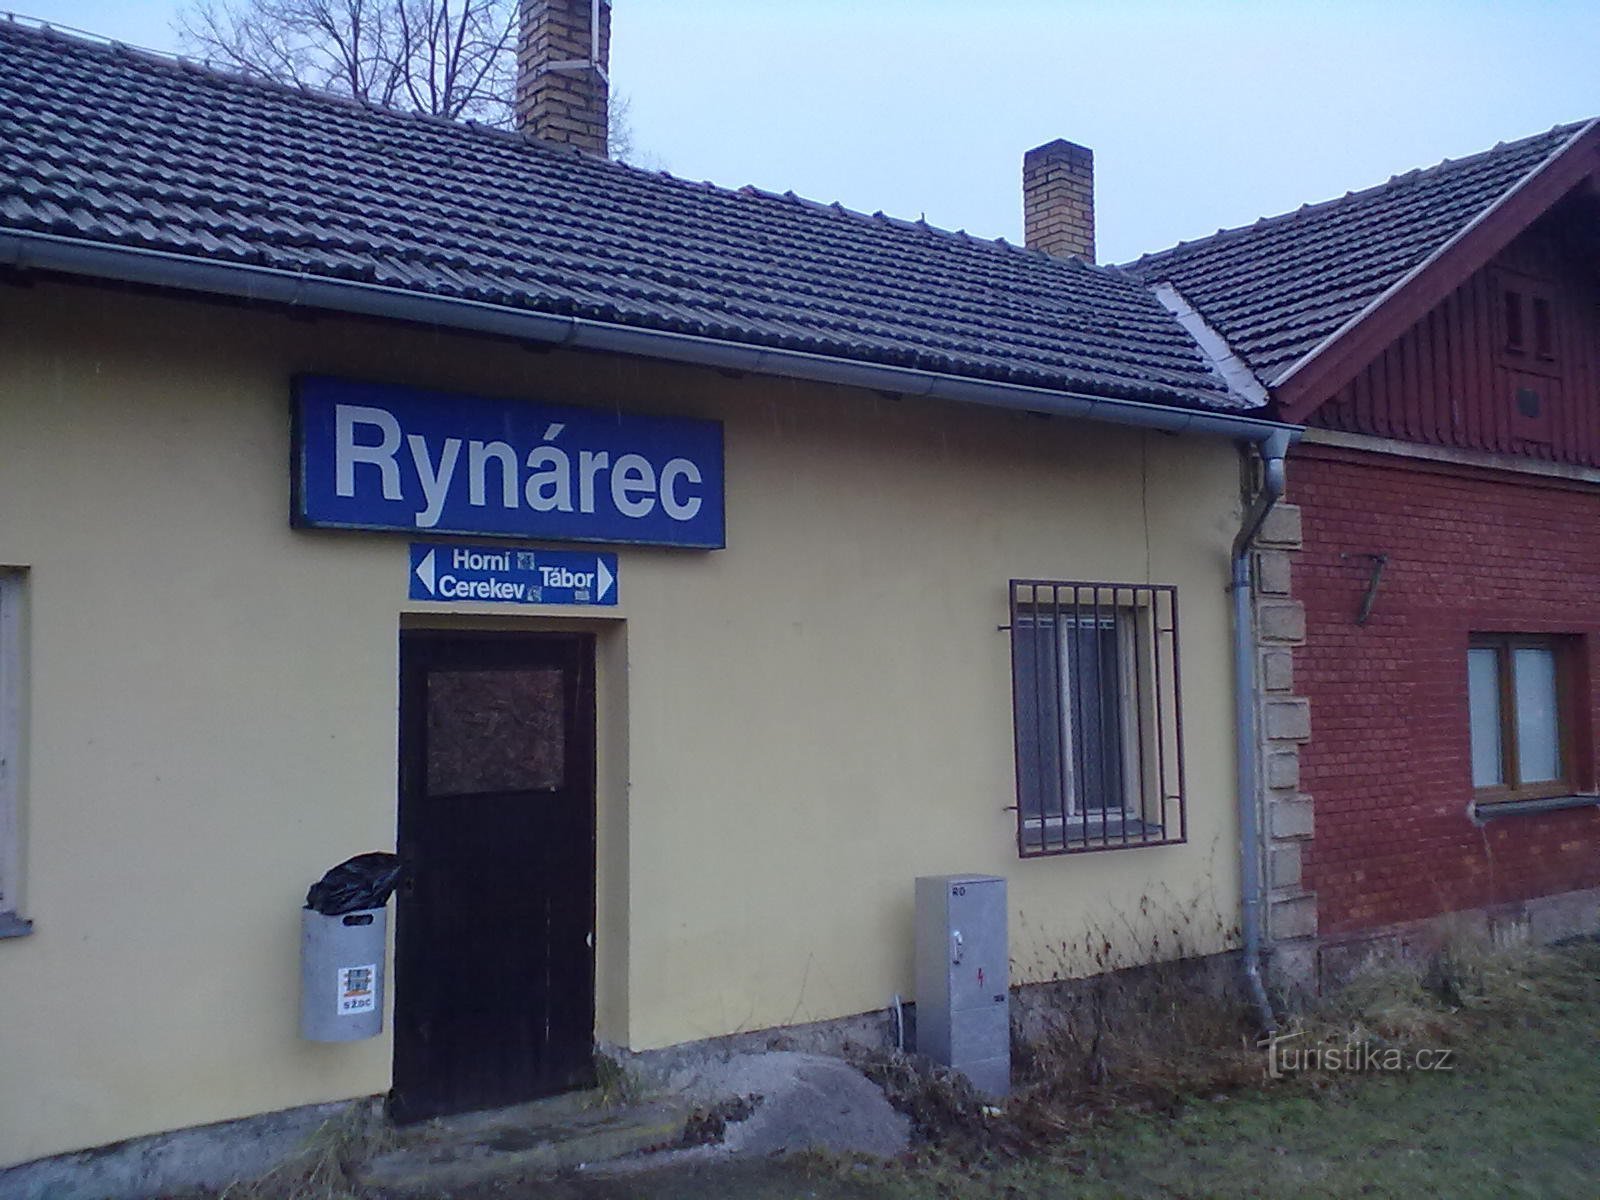 Η αρχή του ταξιδιού. Στάση στο Rynárec, λίγο έξω από τον Pelhřimov. Από το πρωί βρέχει γενναία.